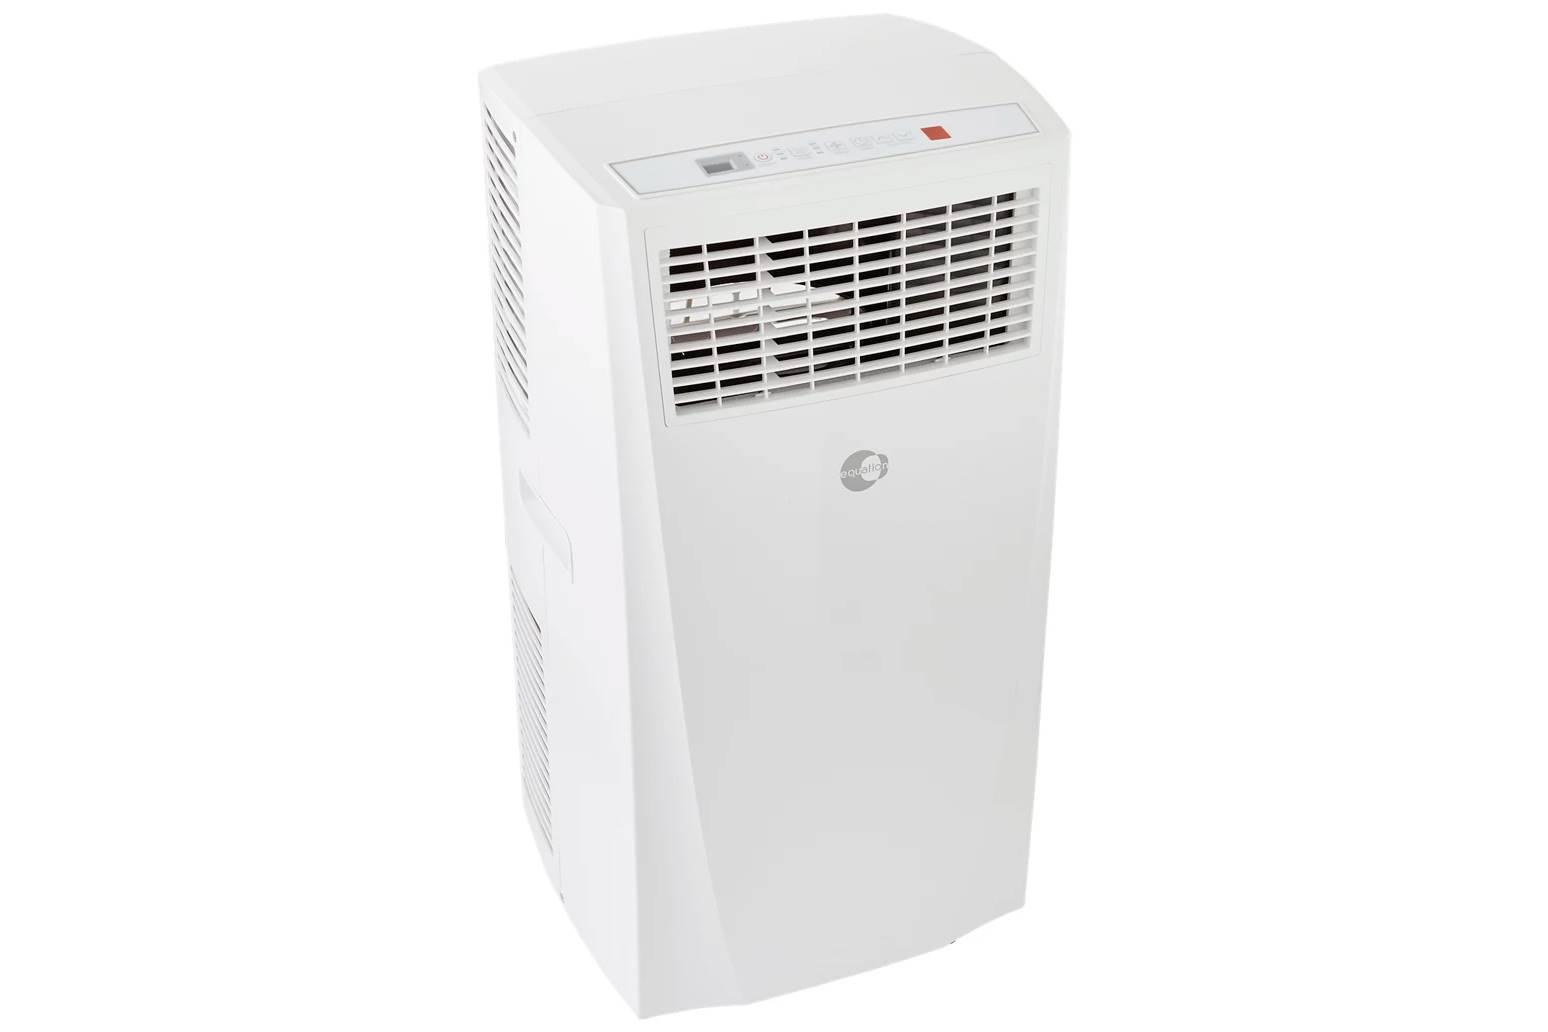 Comprar aire acondicionado portátil EQUATION Basic3 1700 frigorías de Leroy Merlin. 